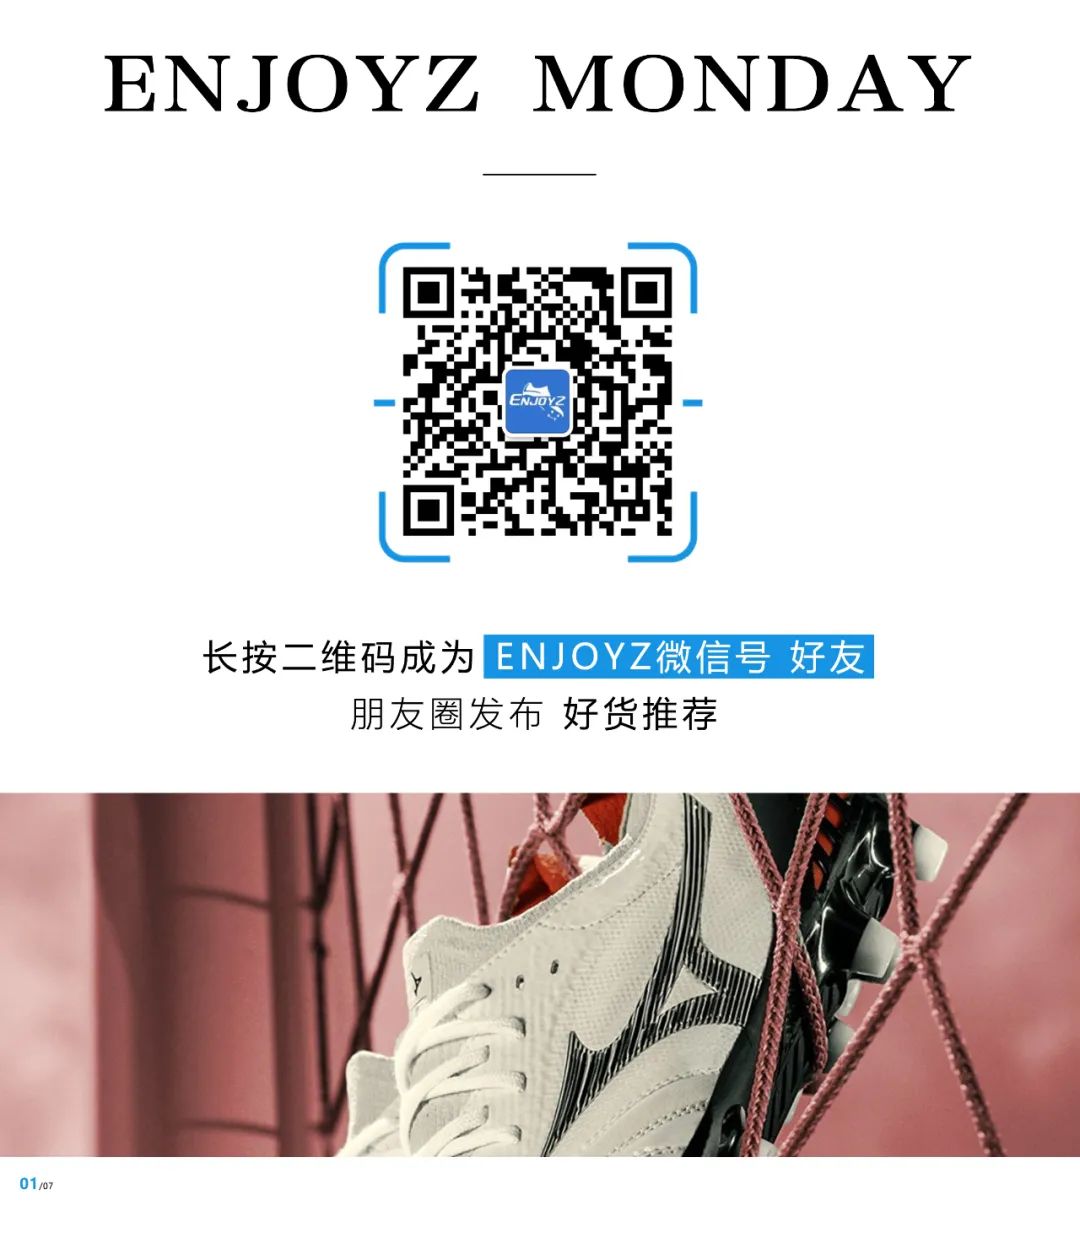 足球钉子鞋和碎钉子鞋_mk包在香港买便宜还是美国便宜_哪买足球鞋便宜